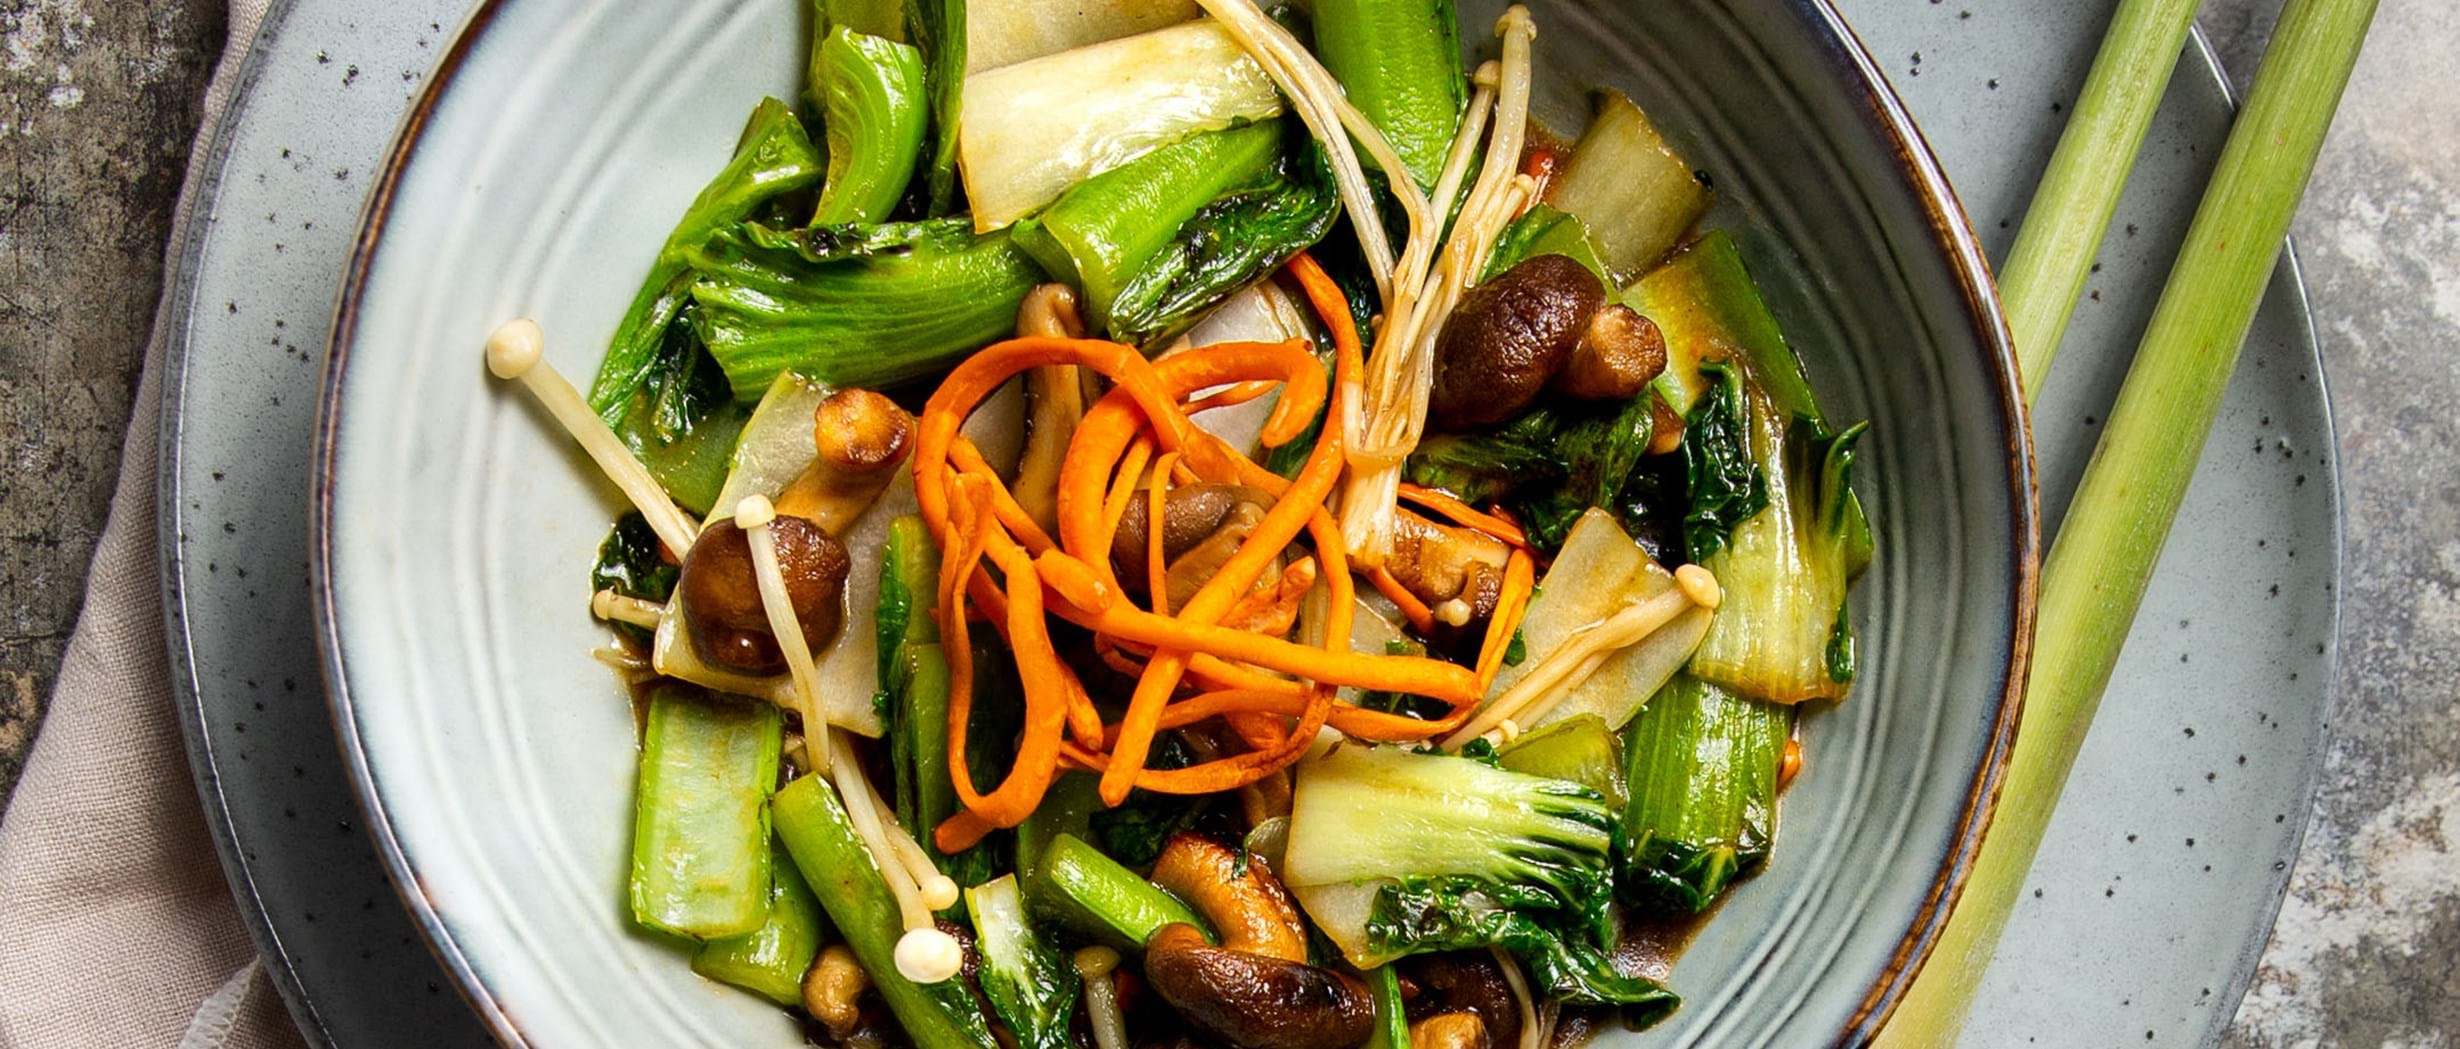 Wok-Gericht mit Pilzen und asiatischem Gemüse